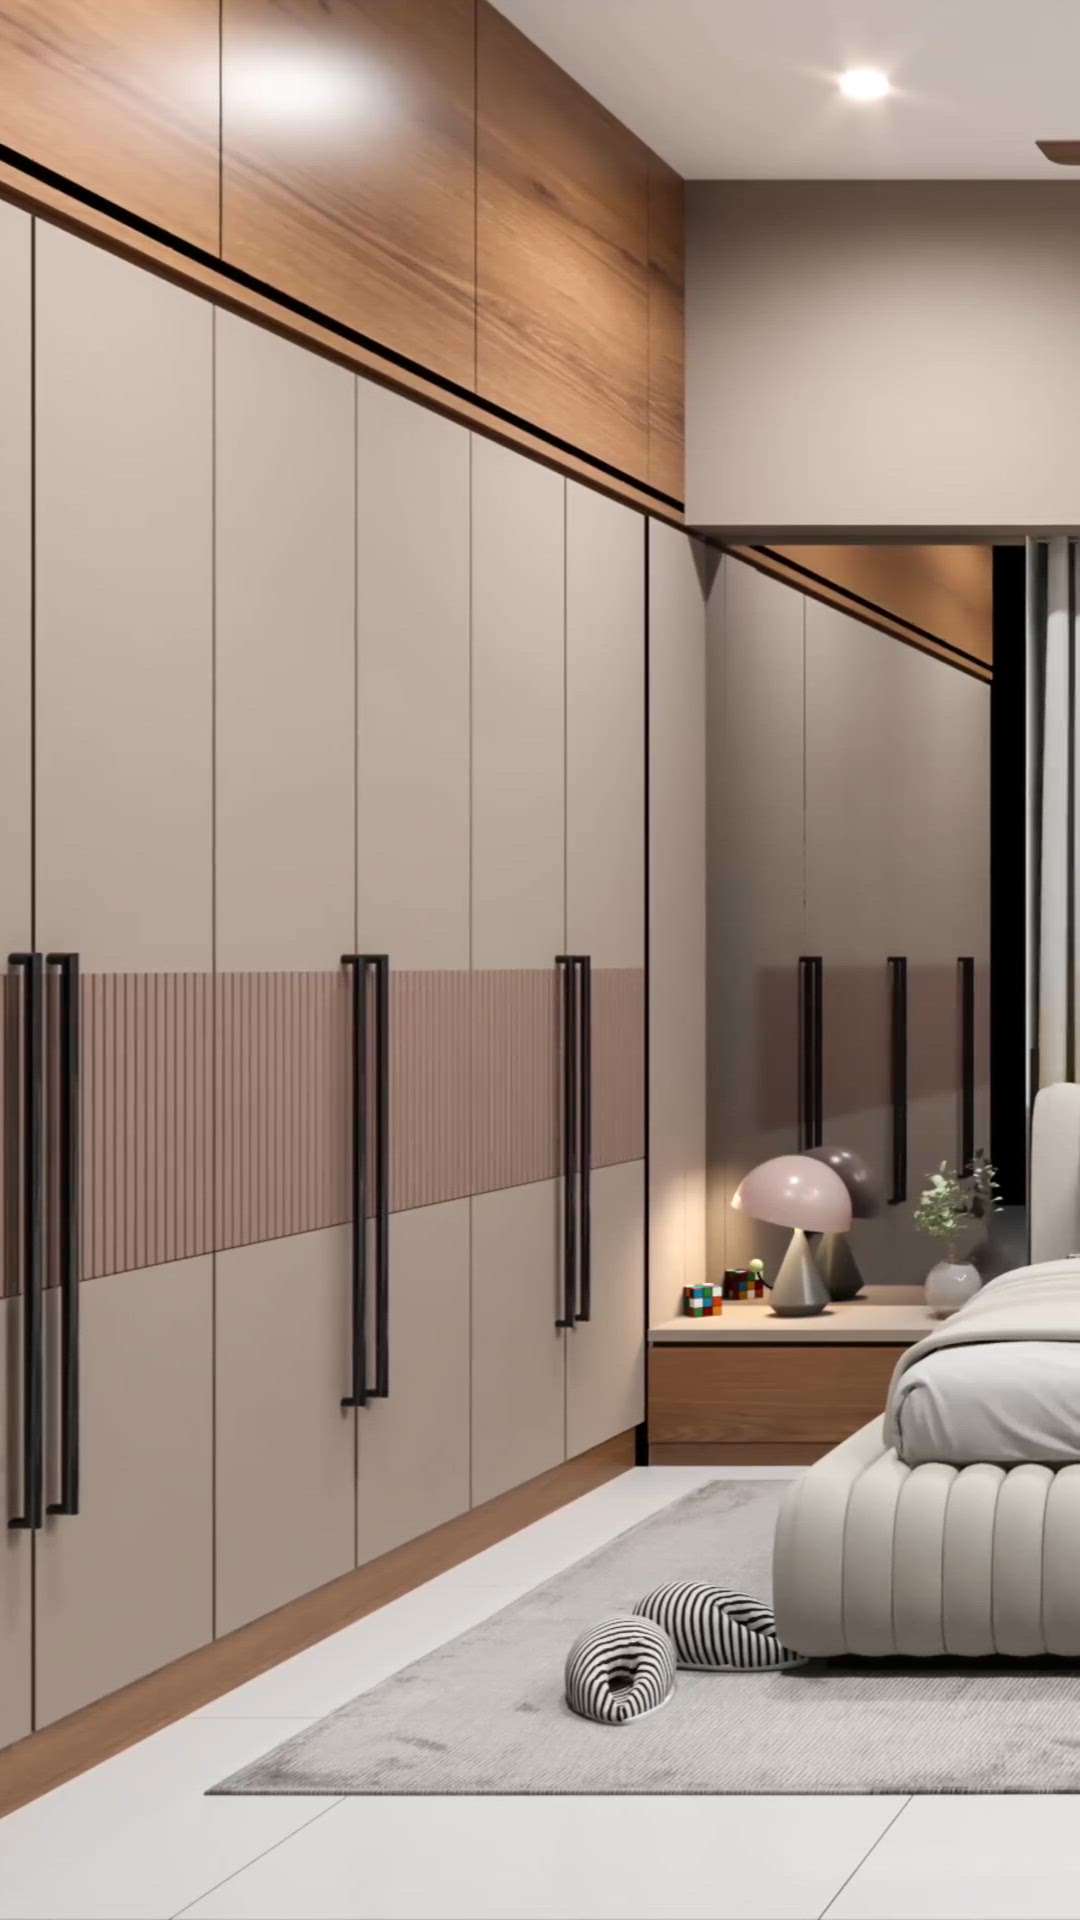 Interior design for bedroom.
minimalist interior design. 
#InteriorDesigner #Architectural&Interior #interiorbedroom #ZEESHAN_INTERIOR_AND_CONSTRUCTION #interiorbedroomdesign